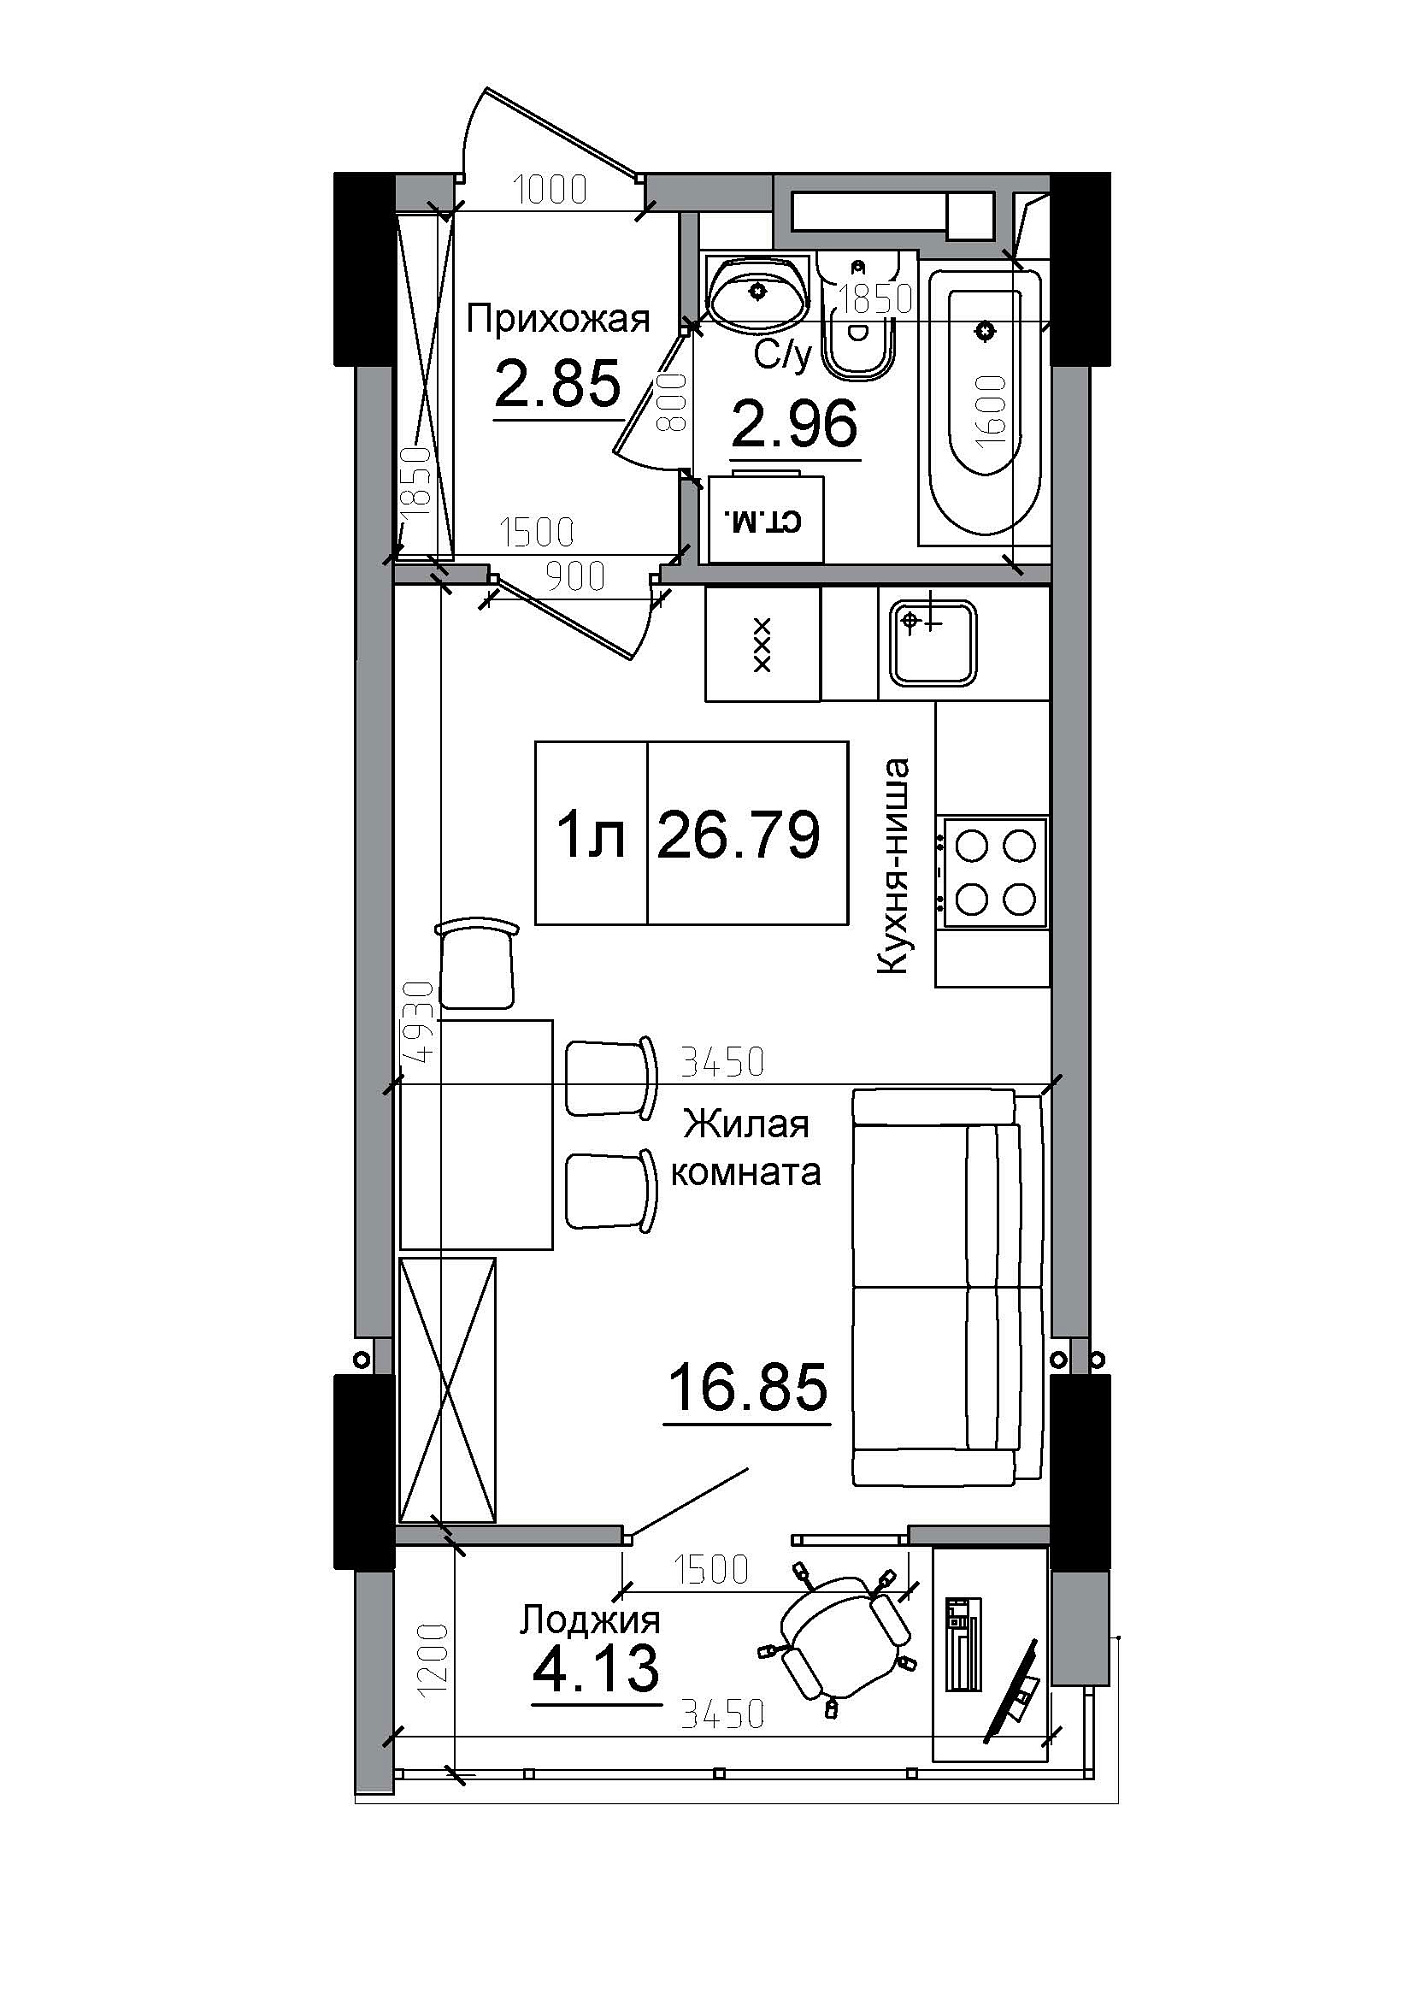 Планування Smart-квартира площею 26.79м2, AB-12-02/00014.